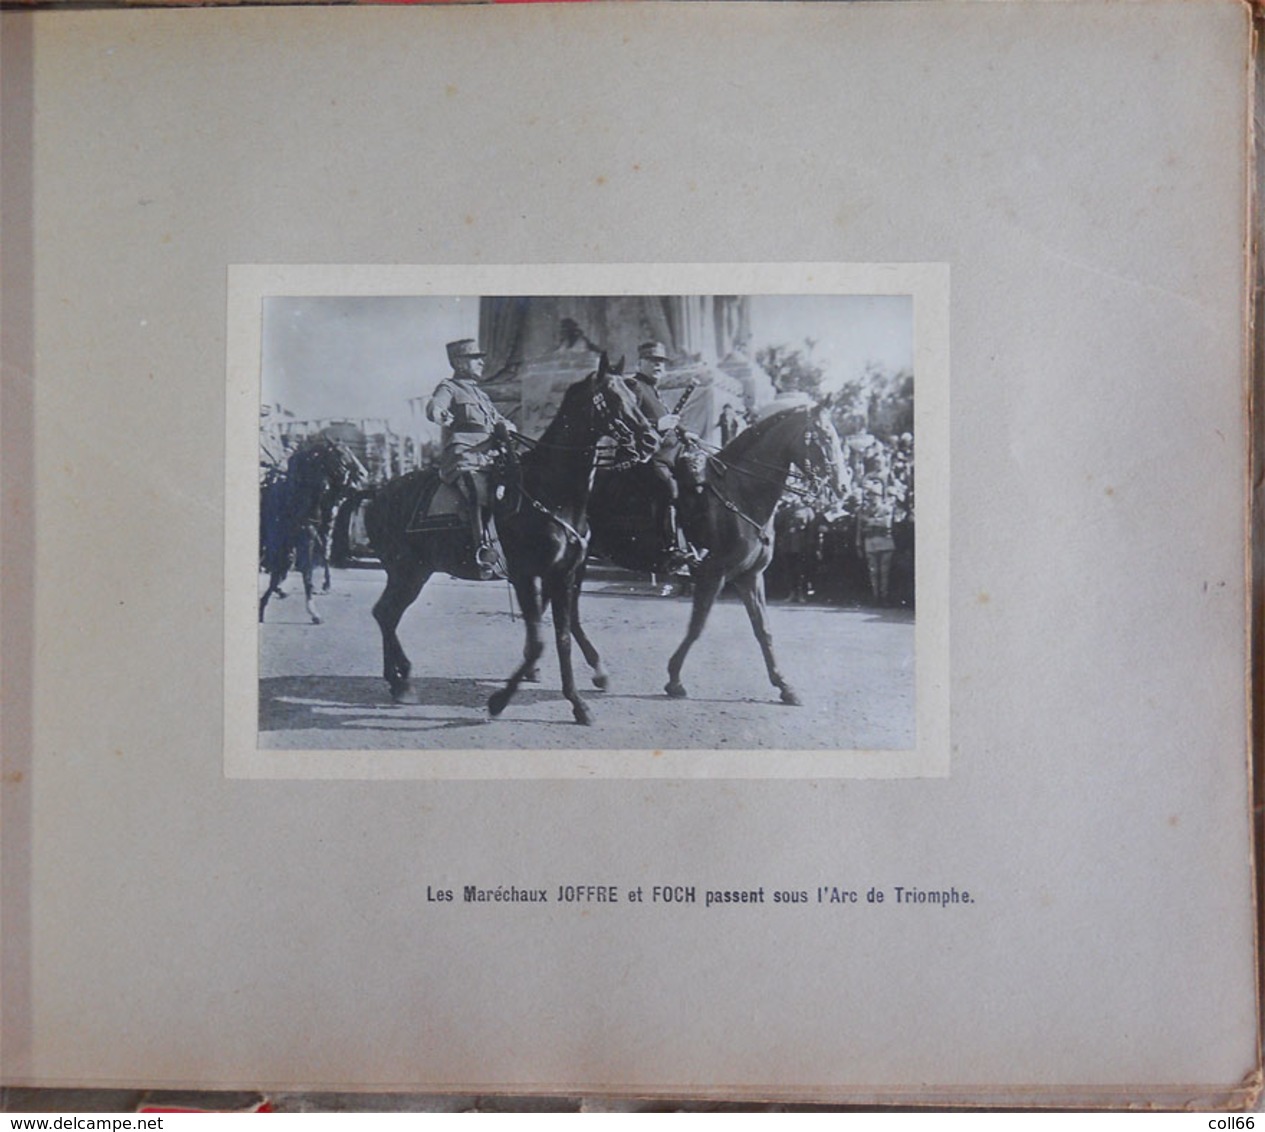 ww1 RARE Album 40 vraies photos Paris 1919 Fêtes de la Victoire Service photographique & cinématographique de Guerre